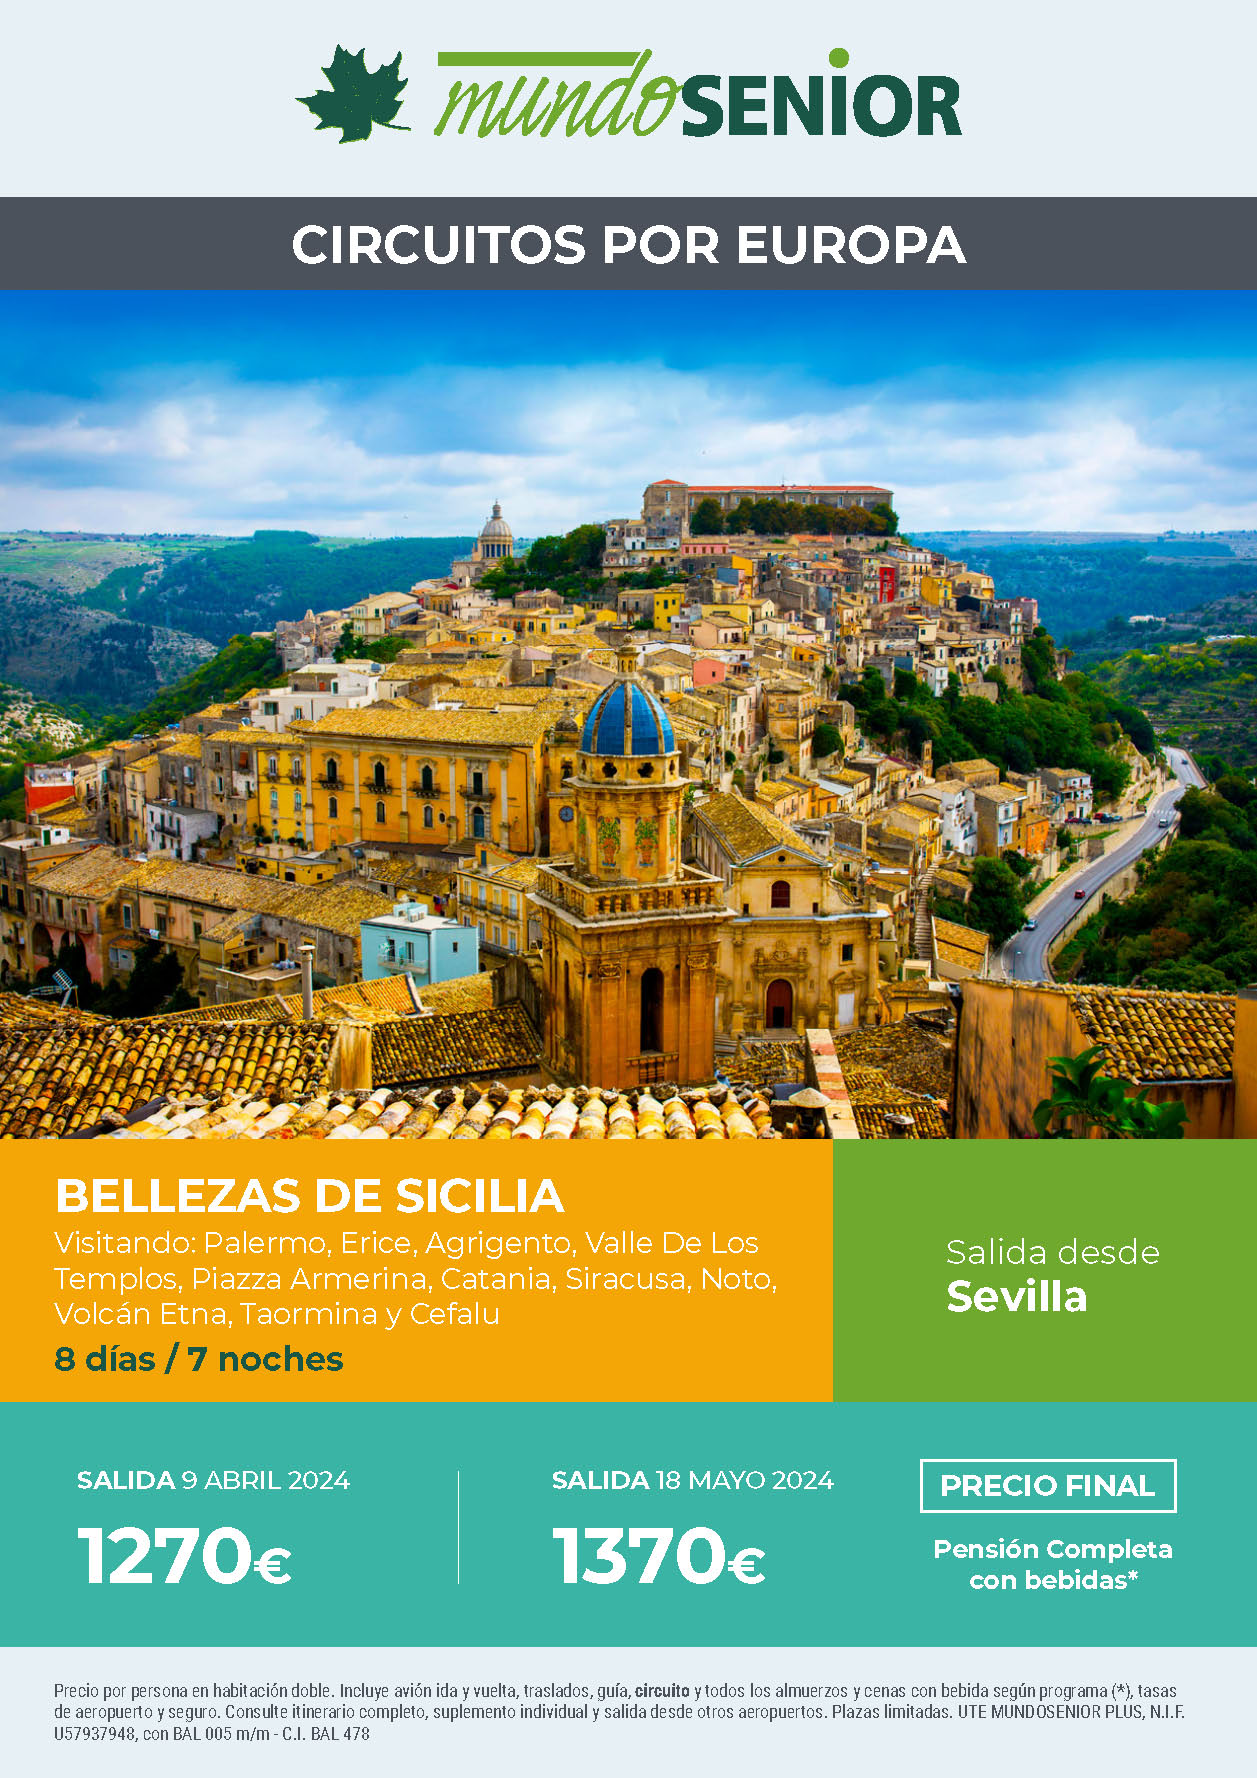 Oferta Mundo Senior circuito Bellezas de Sicilia 8 dias Pension Completa salidas abril y mayo 2024 desde Sevilla